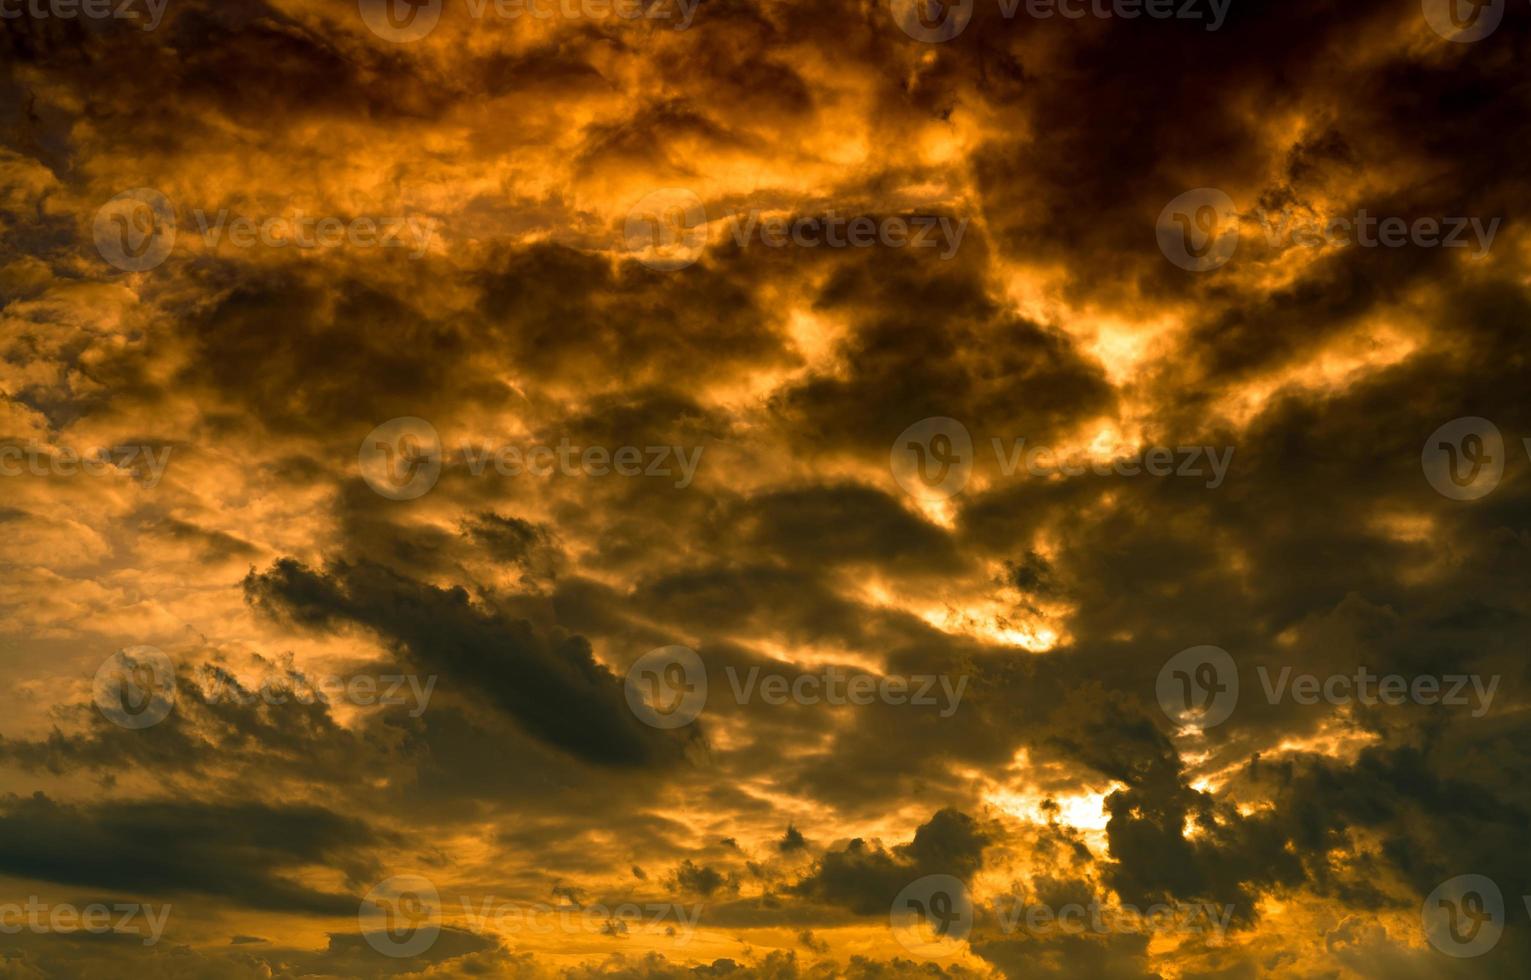 dramatische gouden zonsonderganghemel en witte cumuluswolken. bewolkte lucht. god lichtconcept. mooi wolkenlandschap. vredig en rustig concept. natuur abstracte achtergrond. schoonheid in de natuur. klimaatverandering. foto